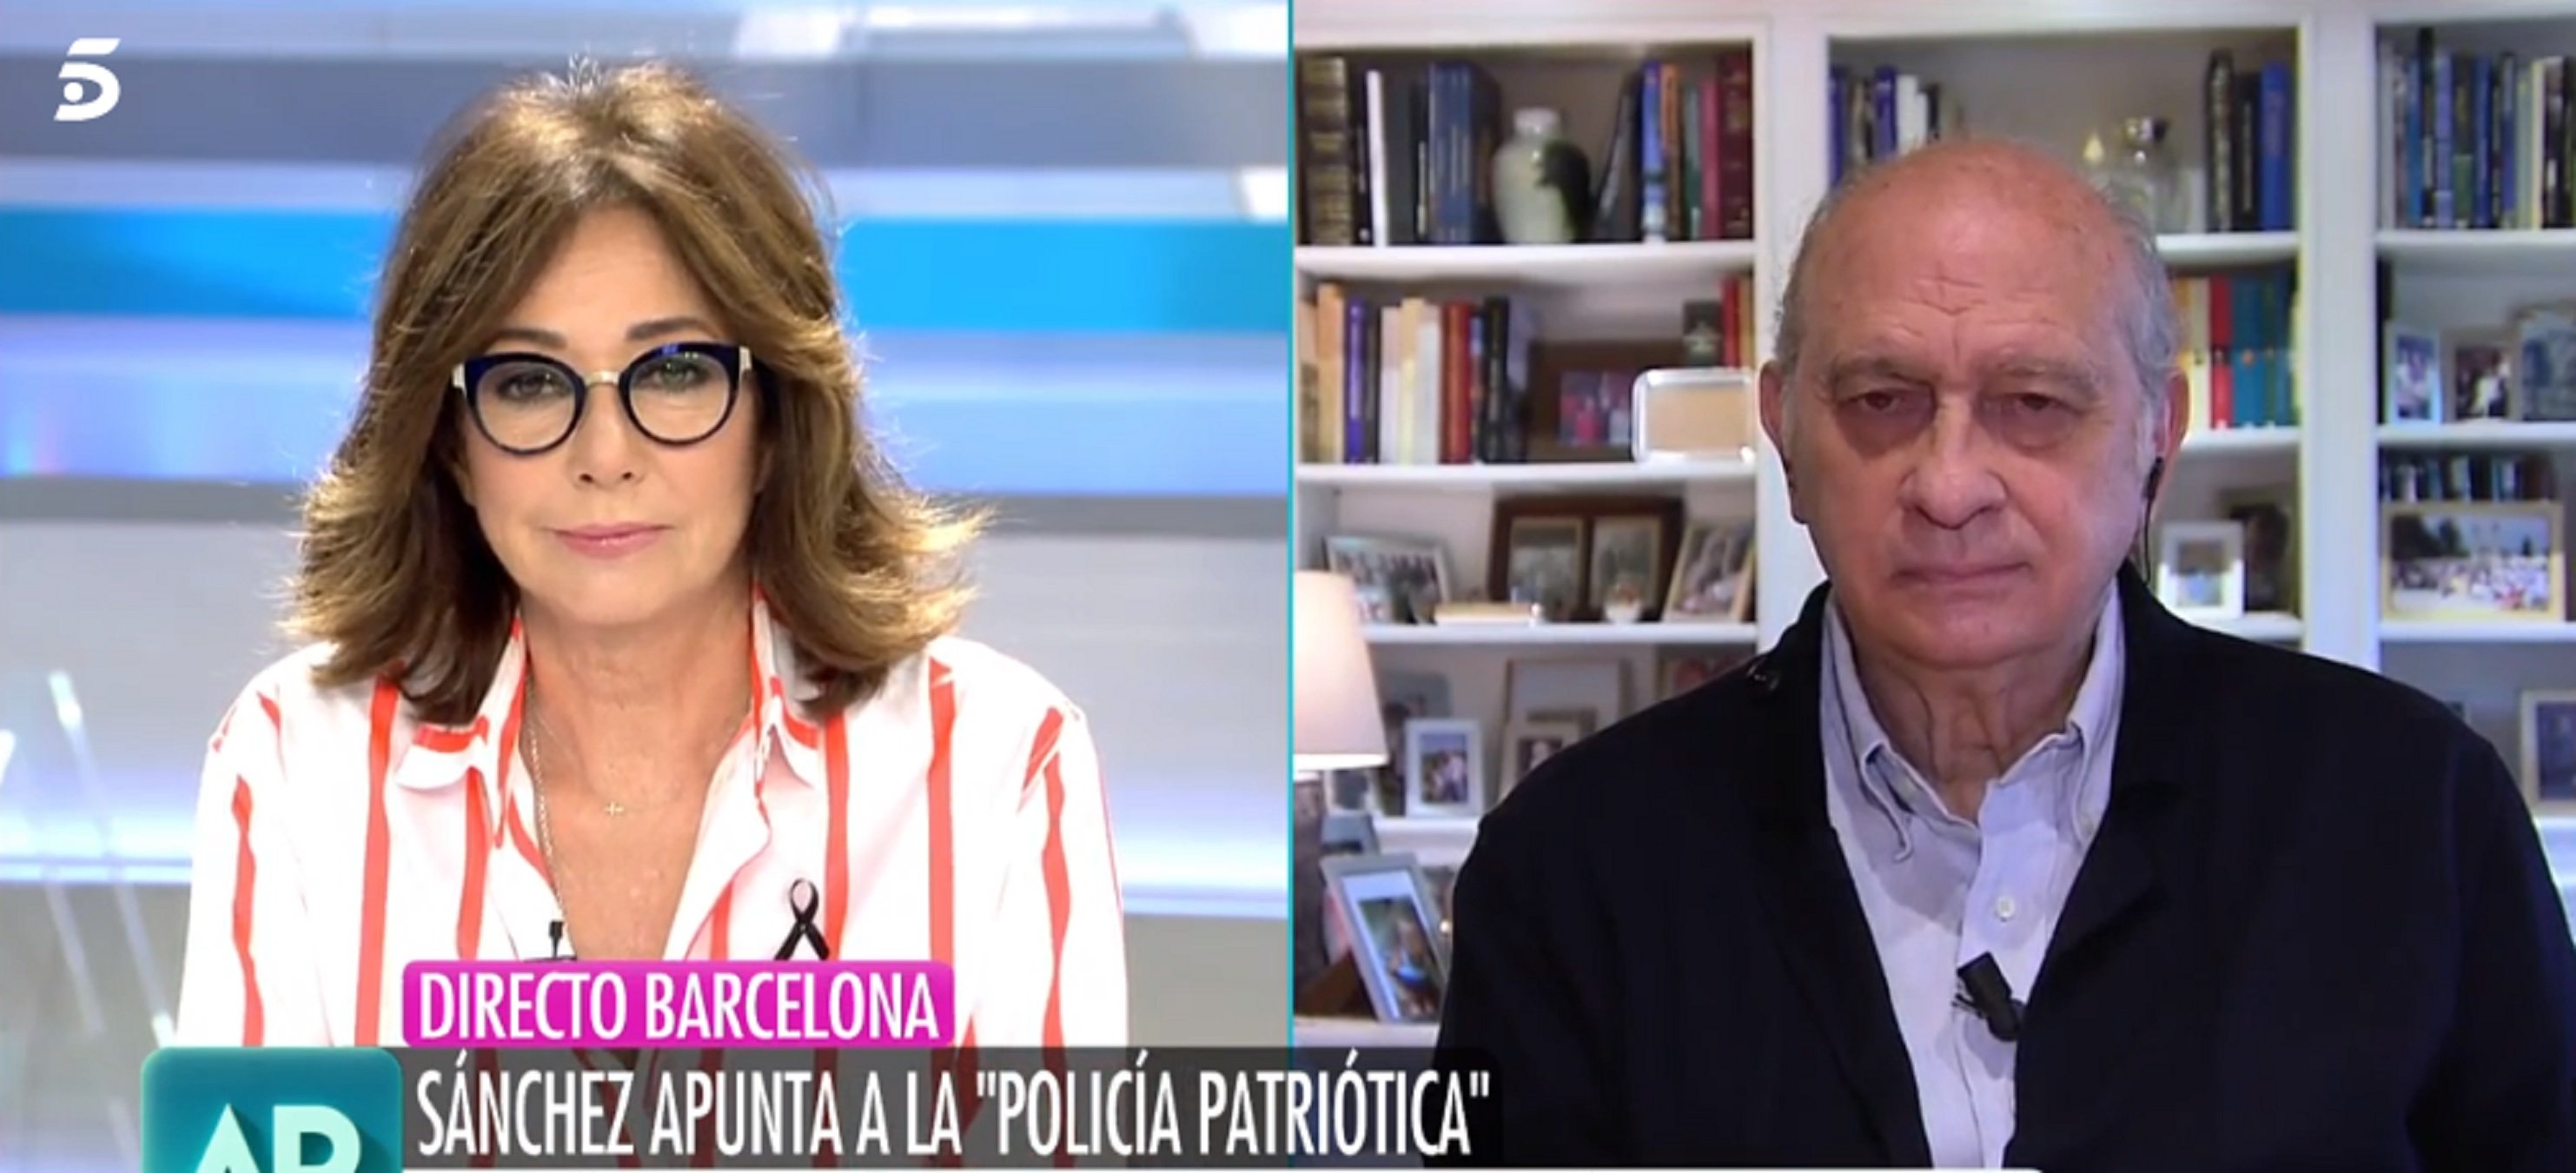 Ana Rosa y Fernández Díaz, amigos de las cloacas, destrozan a TV3 y Jaume Roures